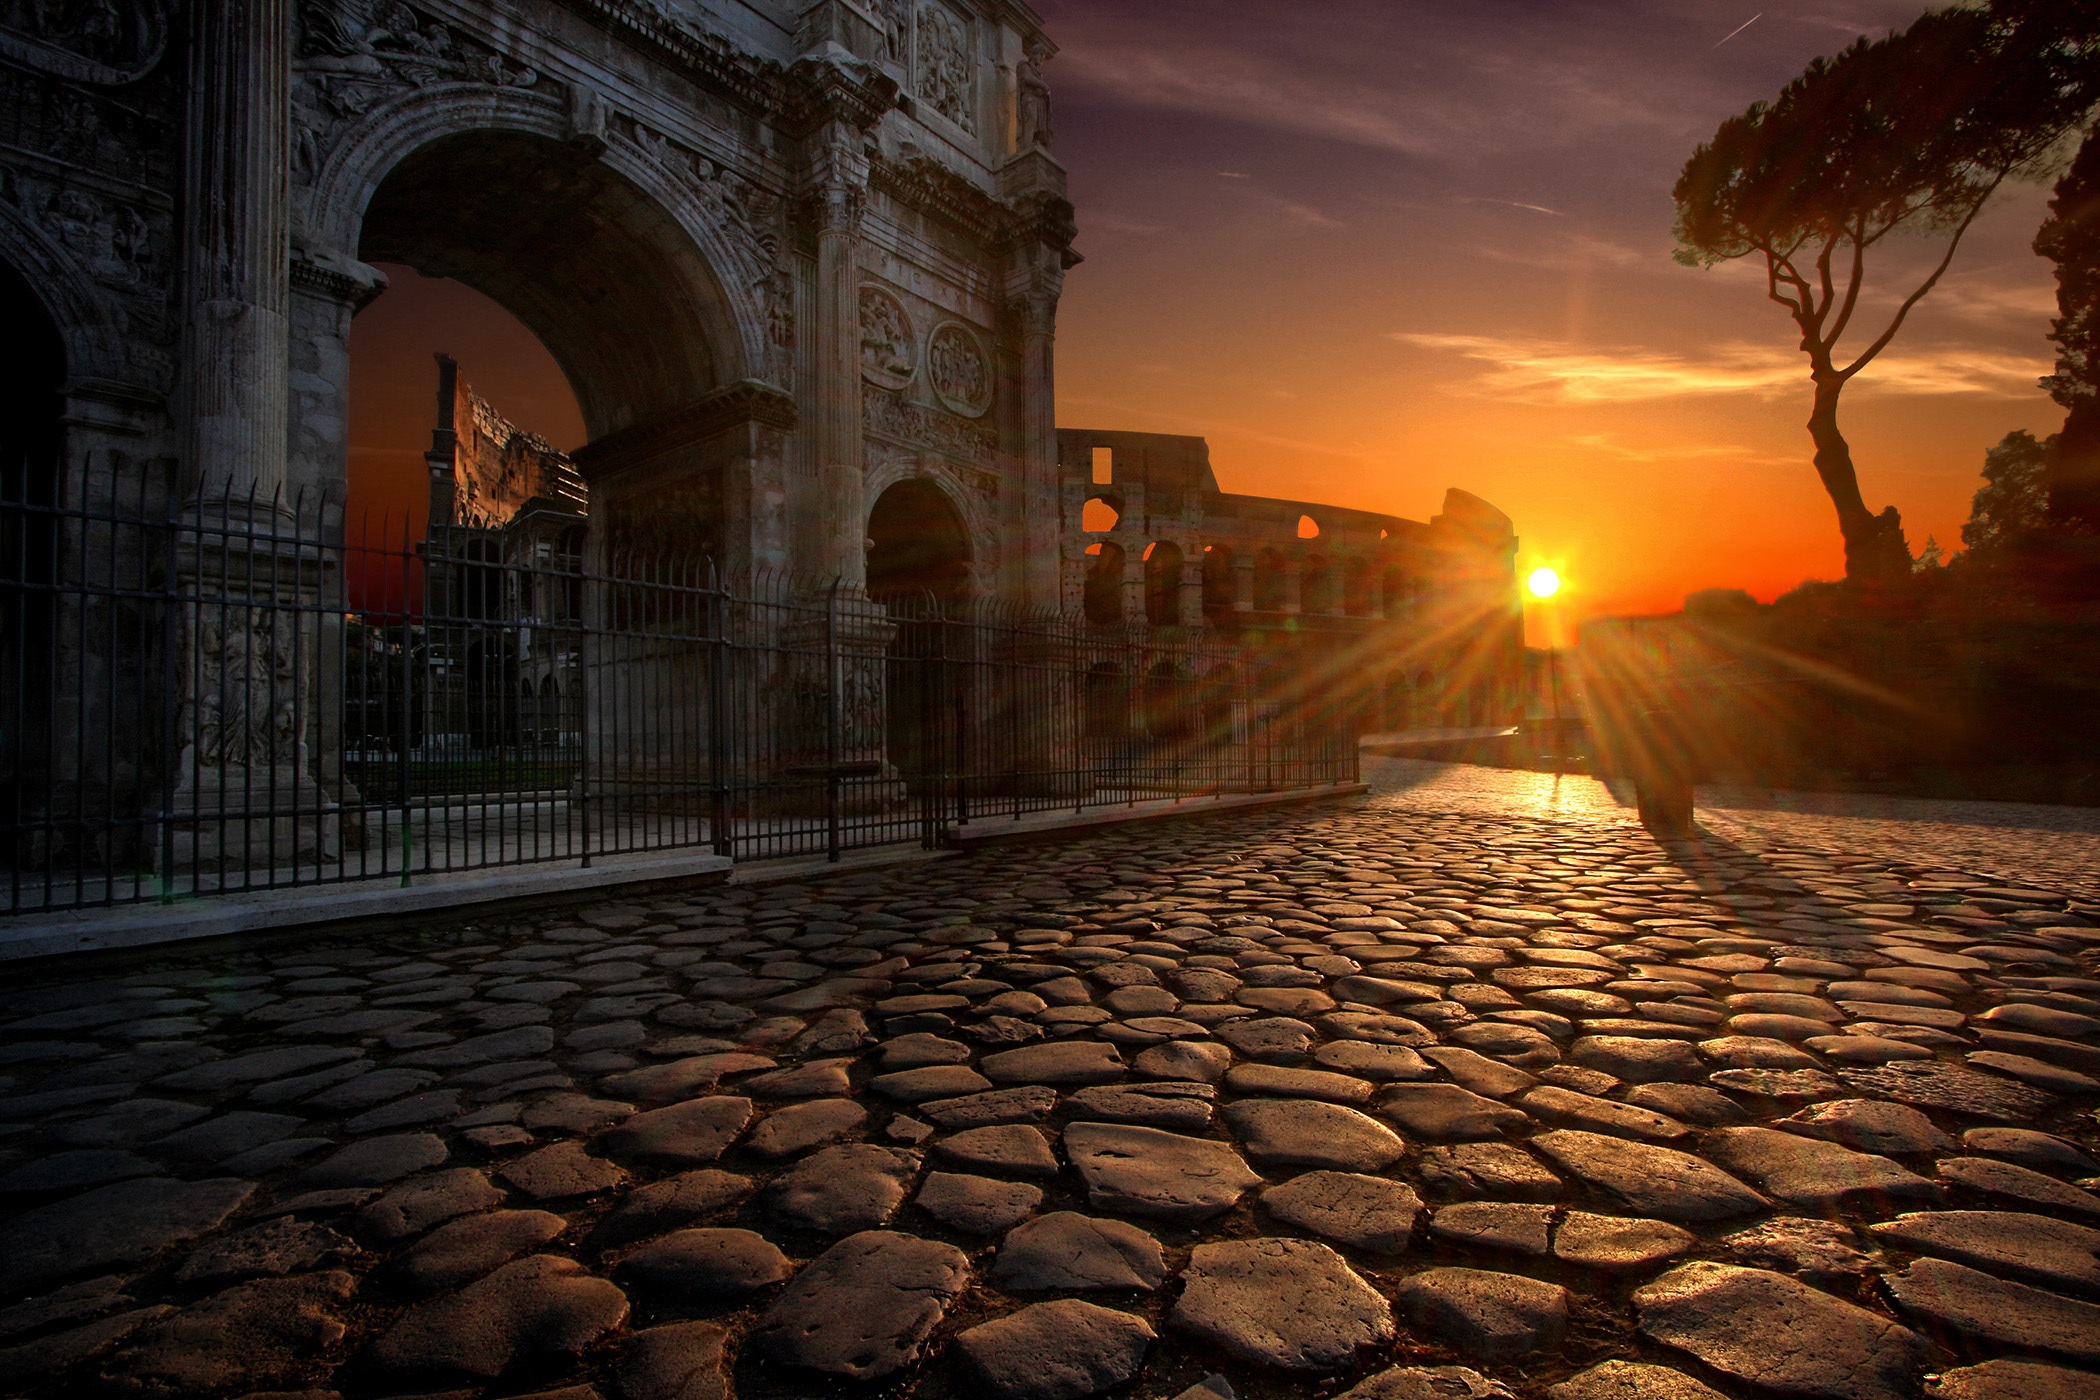 Lugares románticos de Roma, el Arco de Constantino